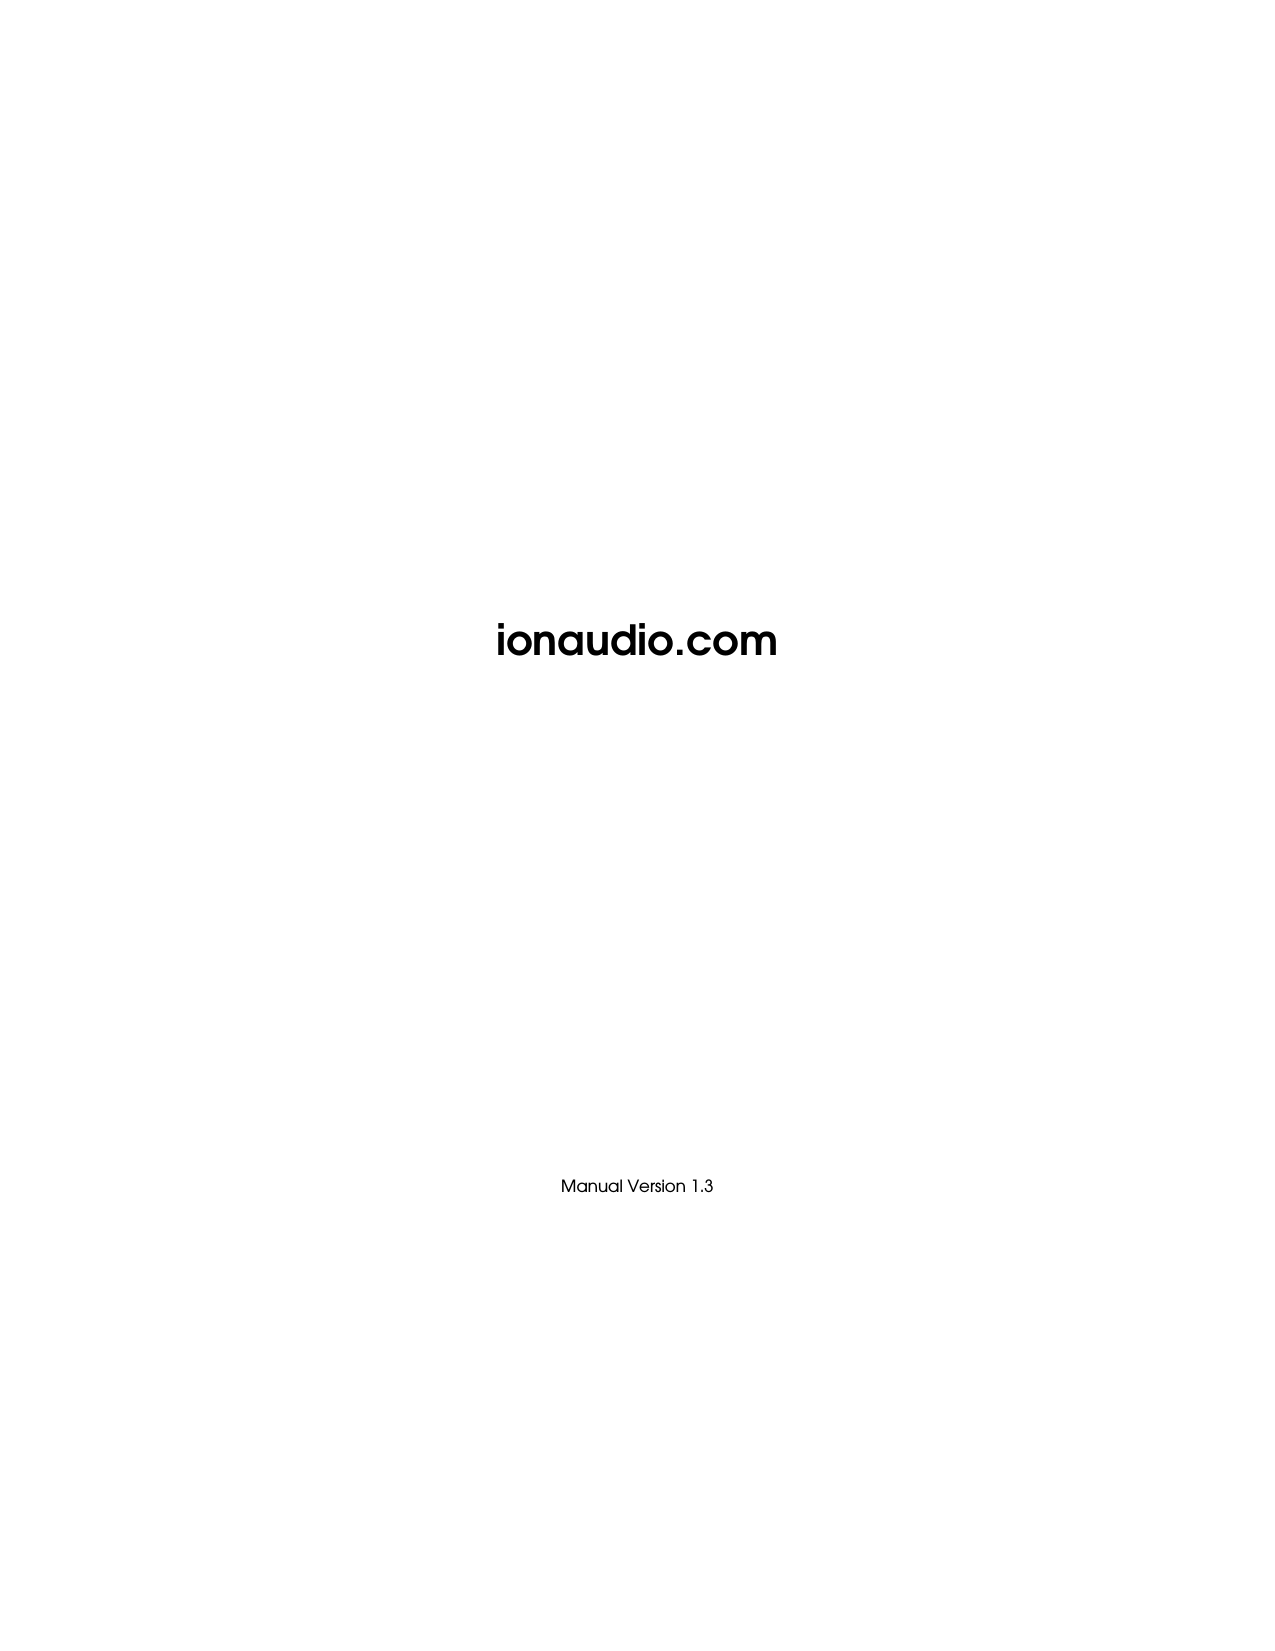                               ionaudio.com                           Manual Version 1.3 